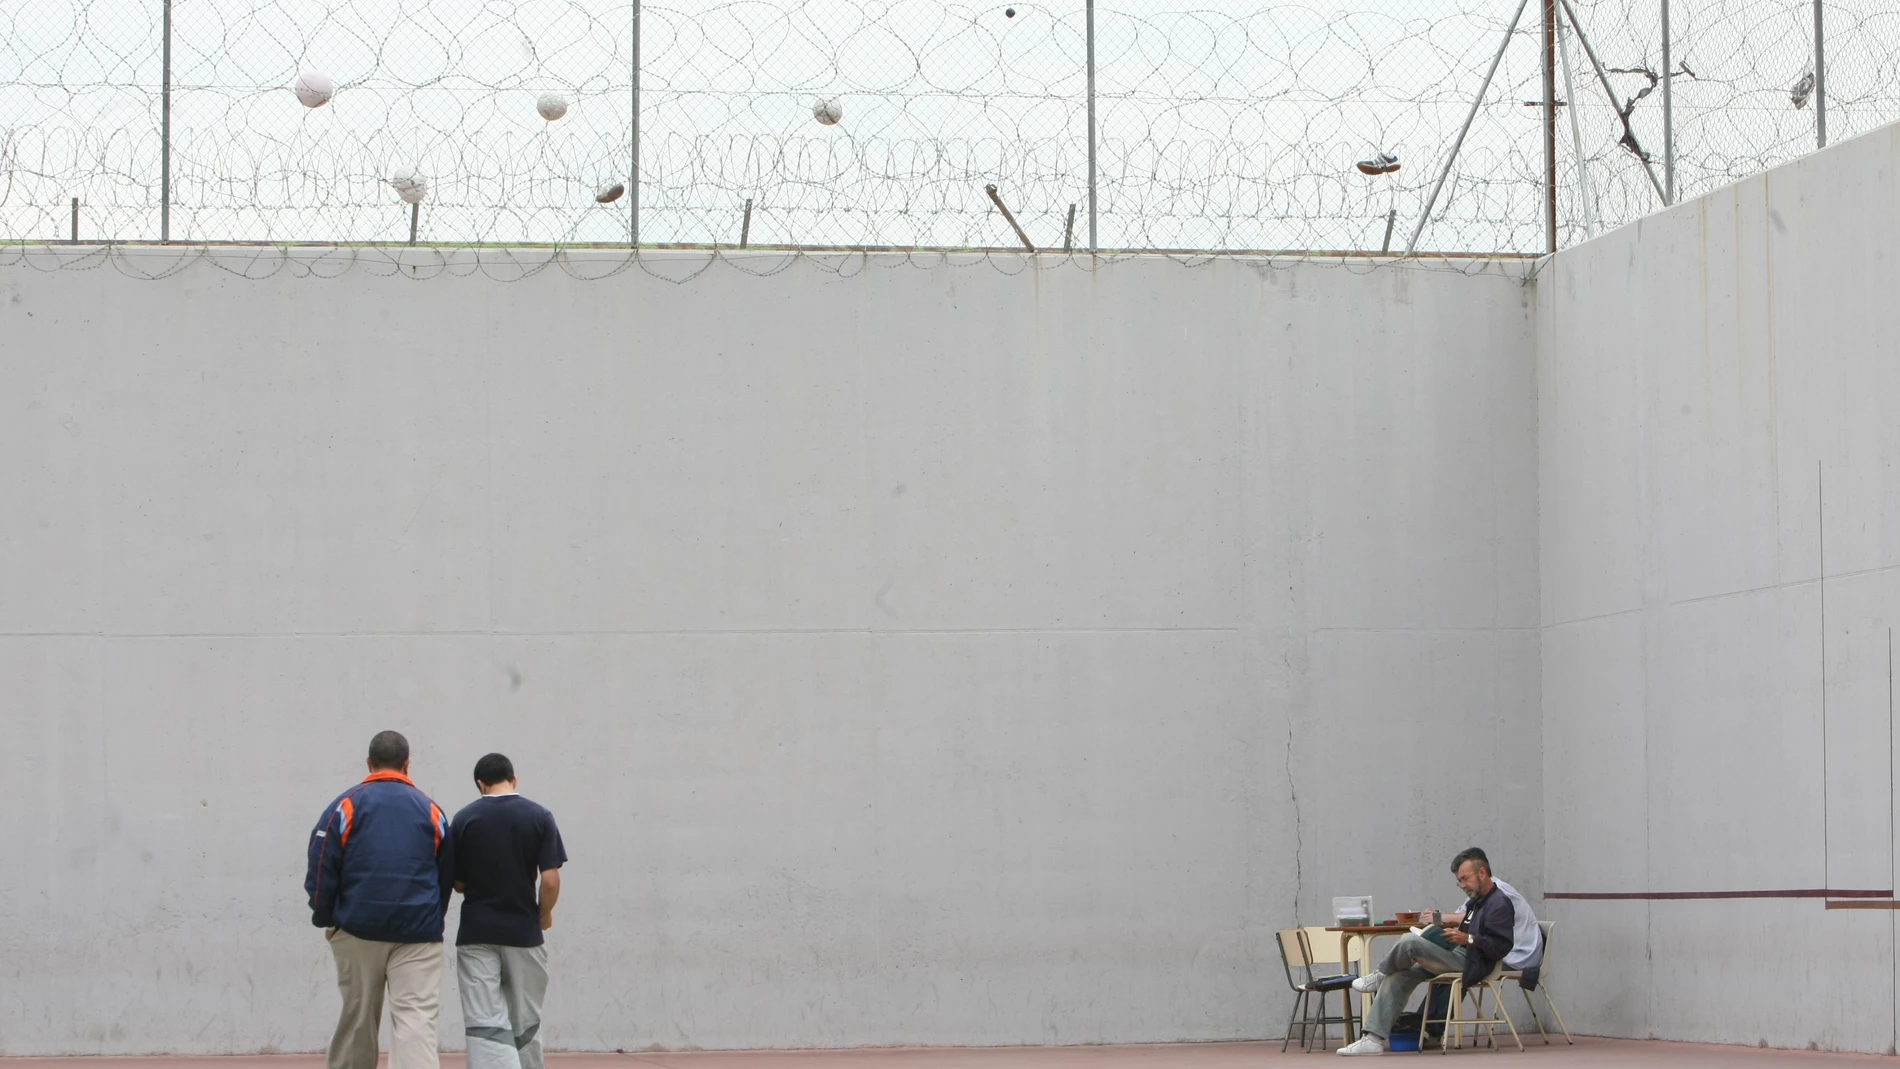 Dos presos caminan mientras otro interno lee sentado, en el patio de un centro penitenciario de Córdoba, en una imagen de archivo